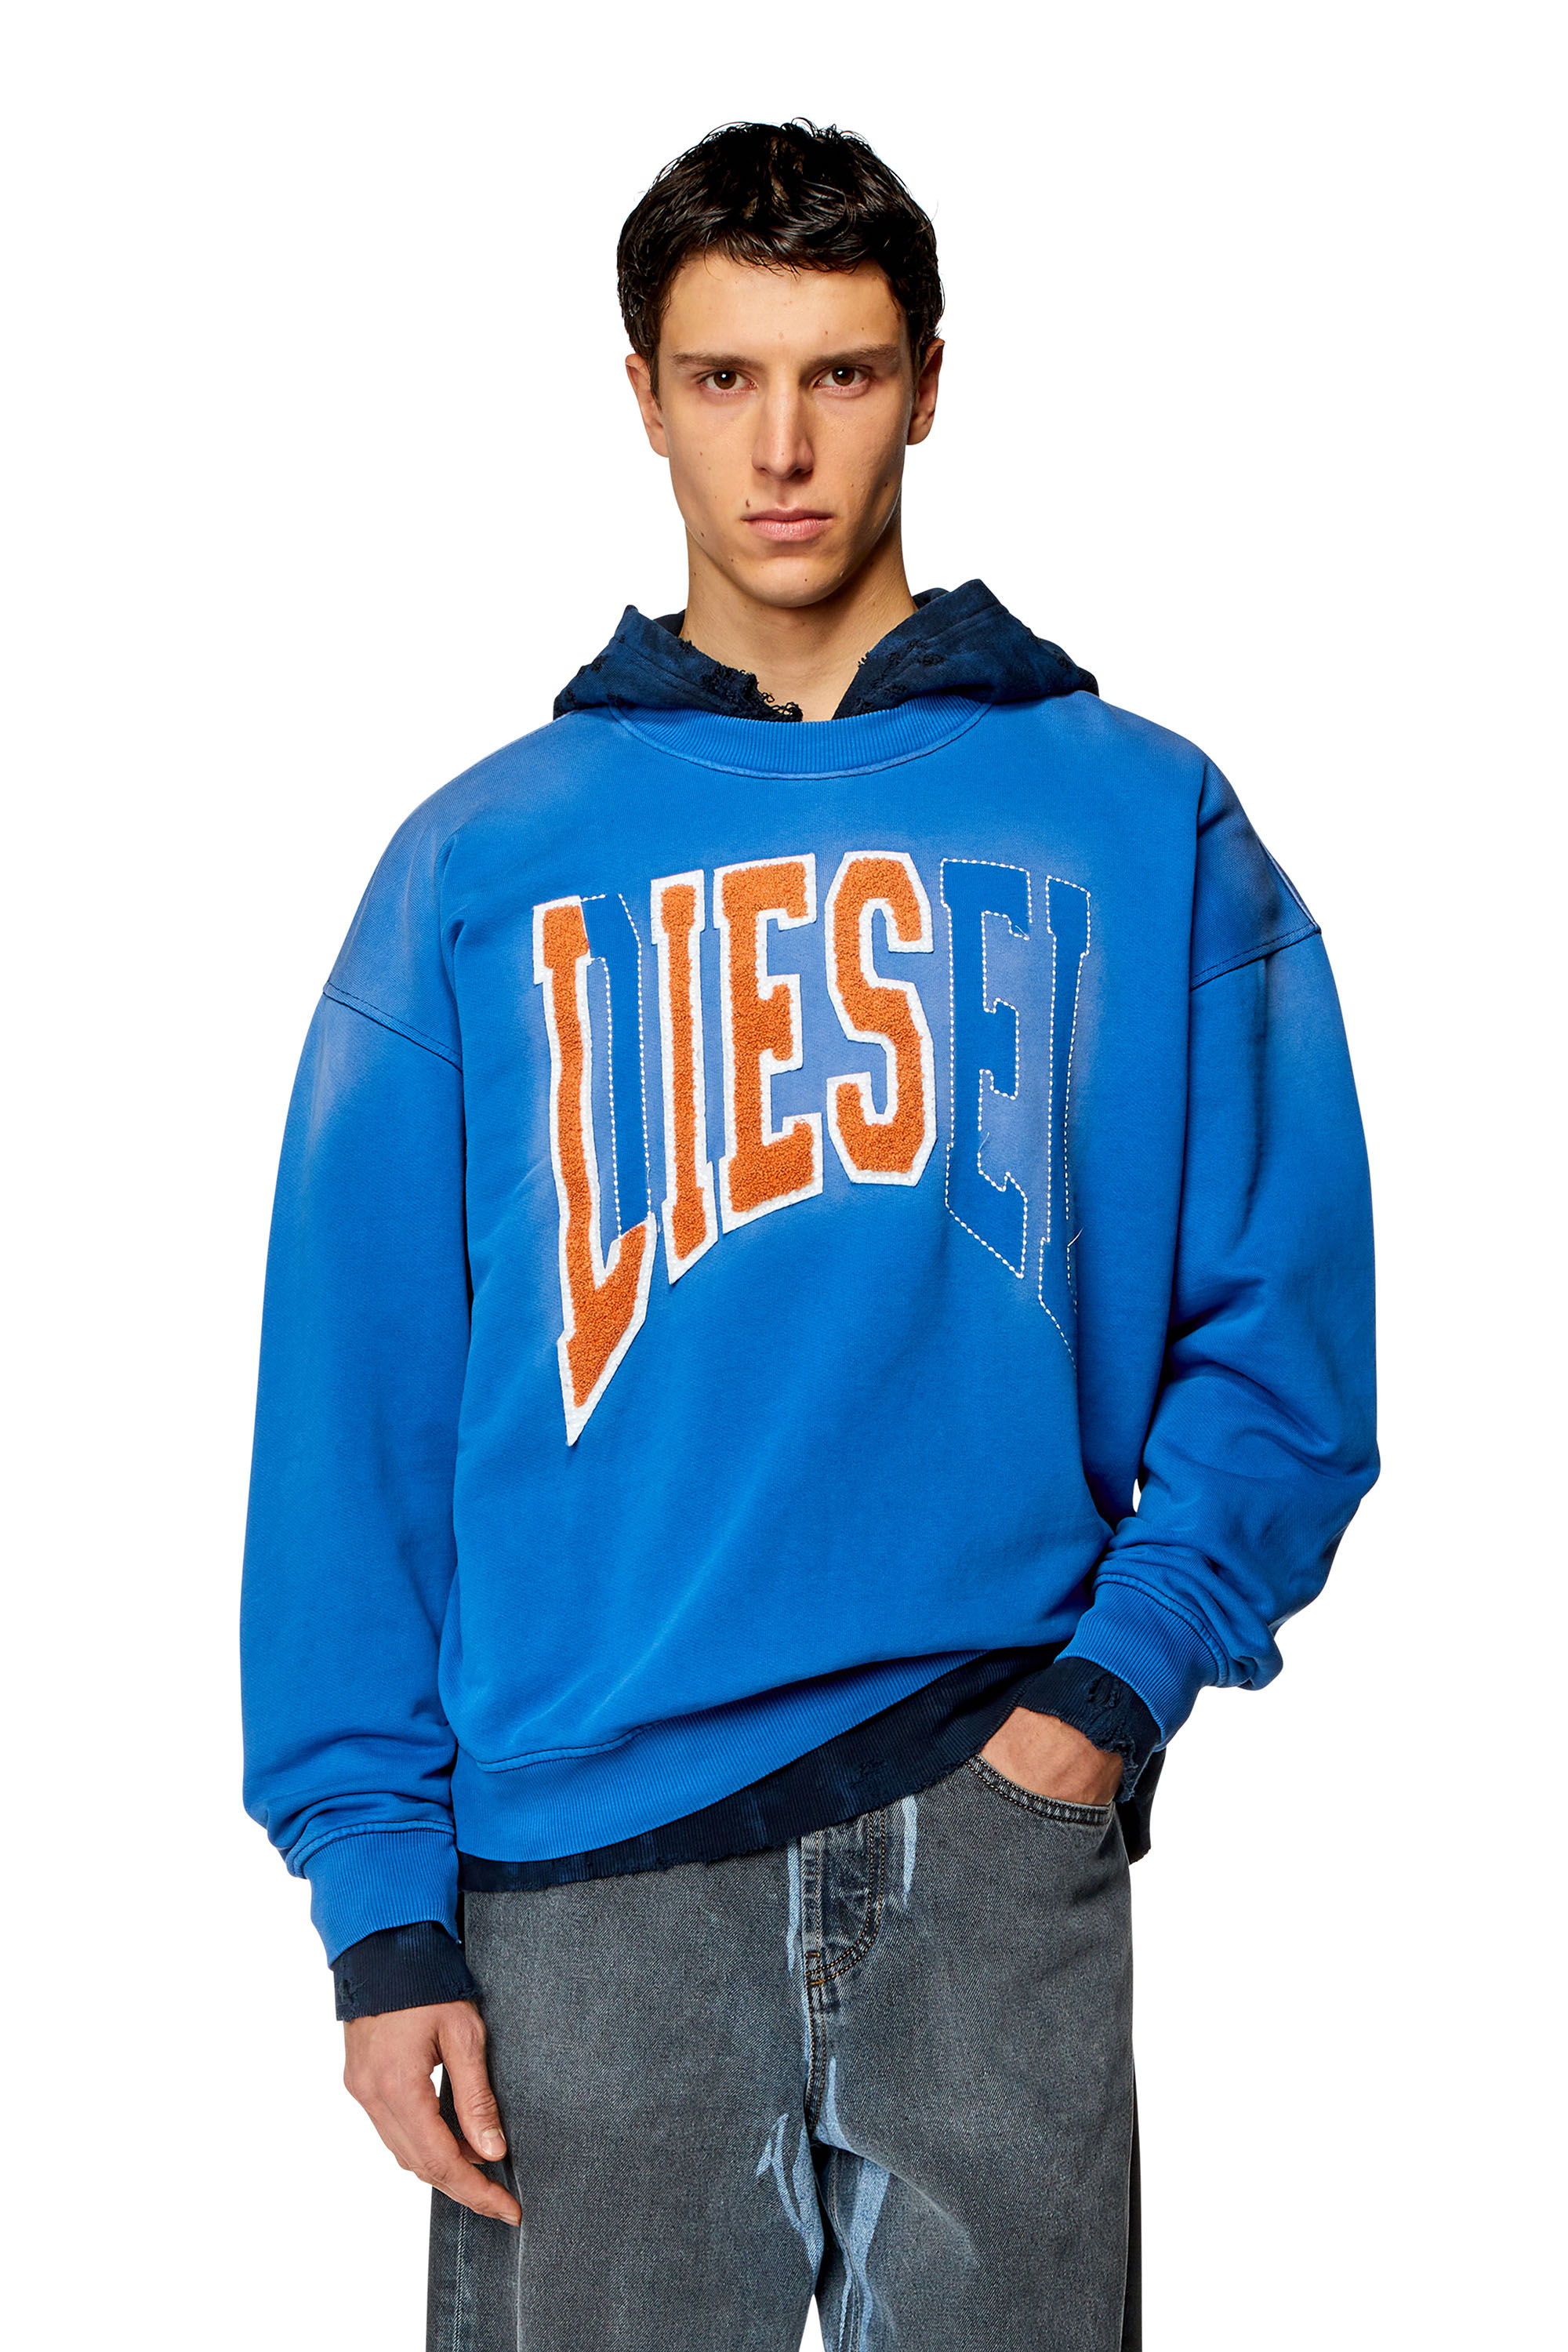 Diesel - Sweat-shirt style universitaire avec empiècements LIES - Pull Cotton - Homme - Bleu